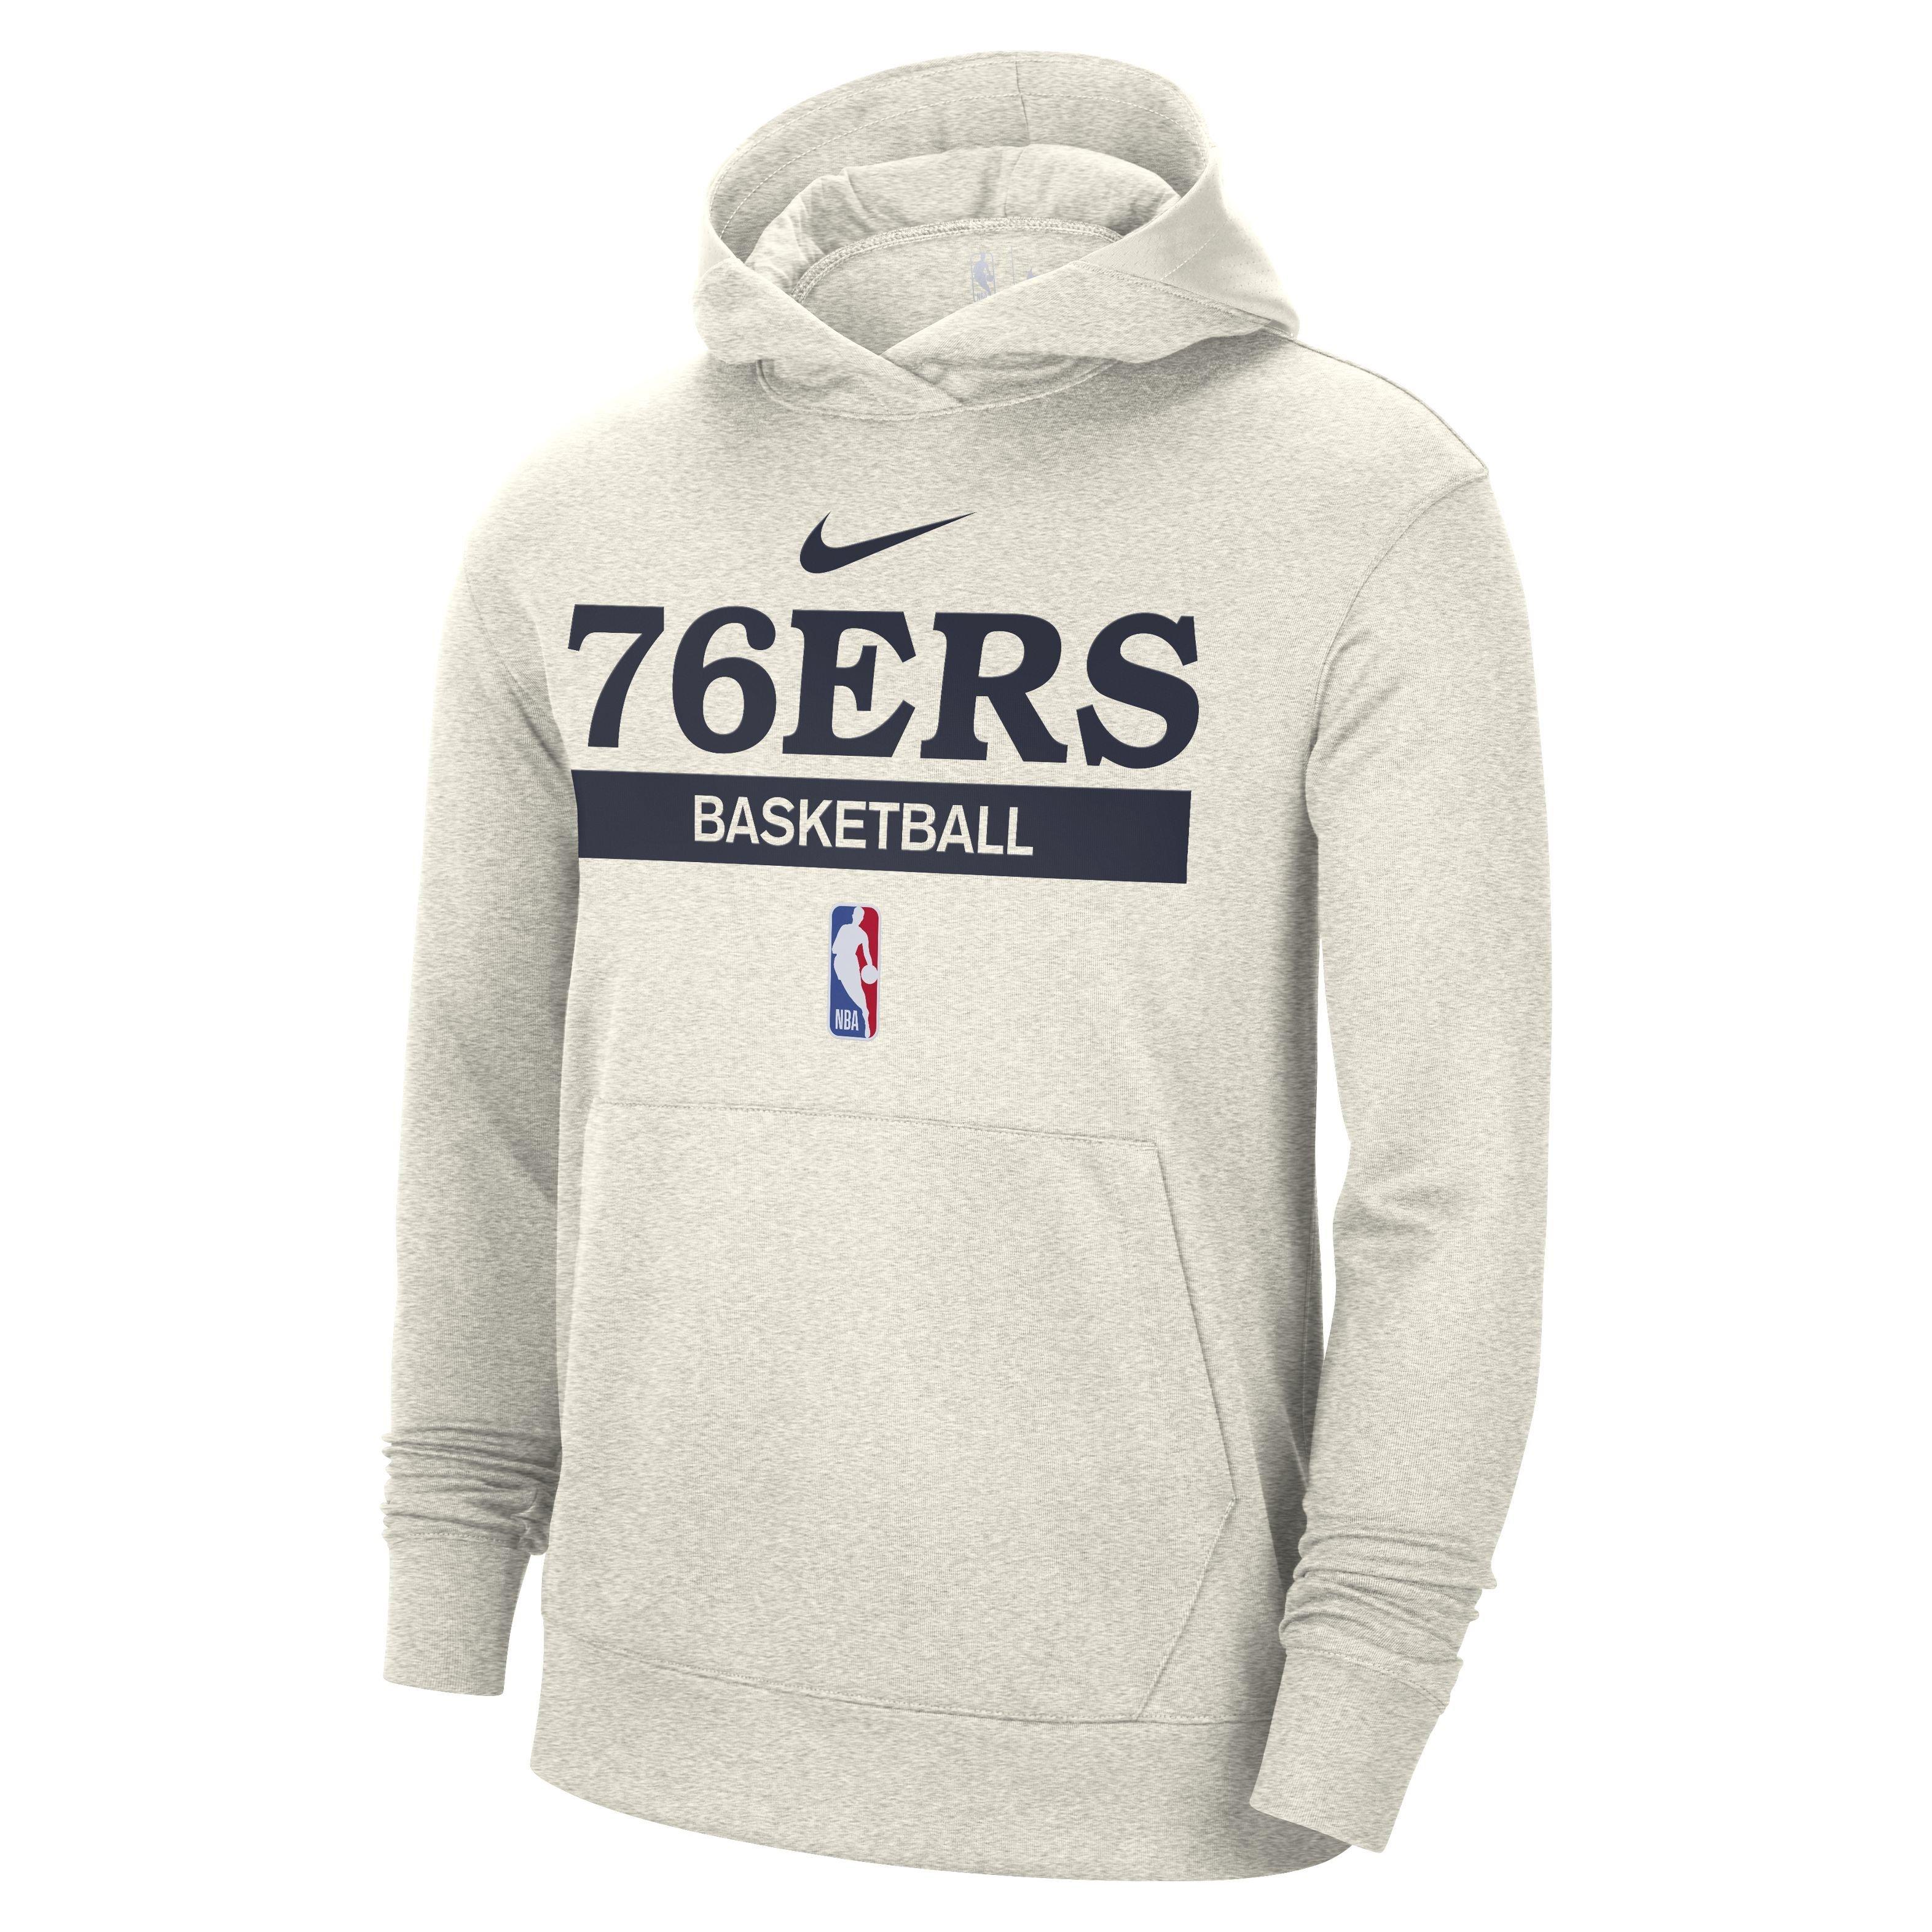 Official Philadelphia 76ers Jordan Brand Hoodies, Jordan Brand 76ers  Sweatshirts, Pullovers, Jordan Brand Sixers Hoodie